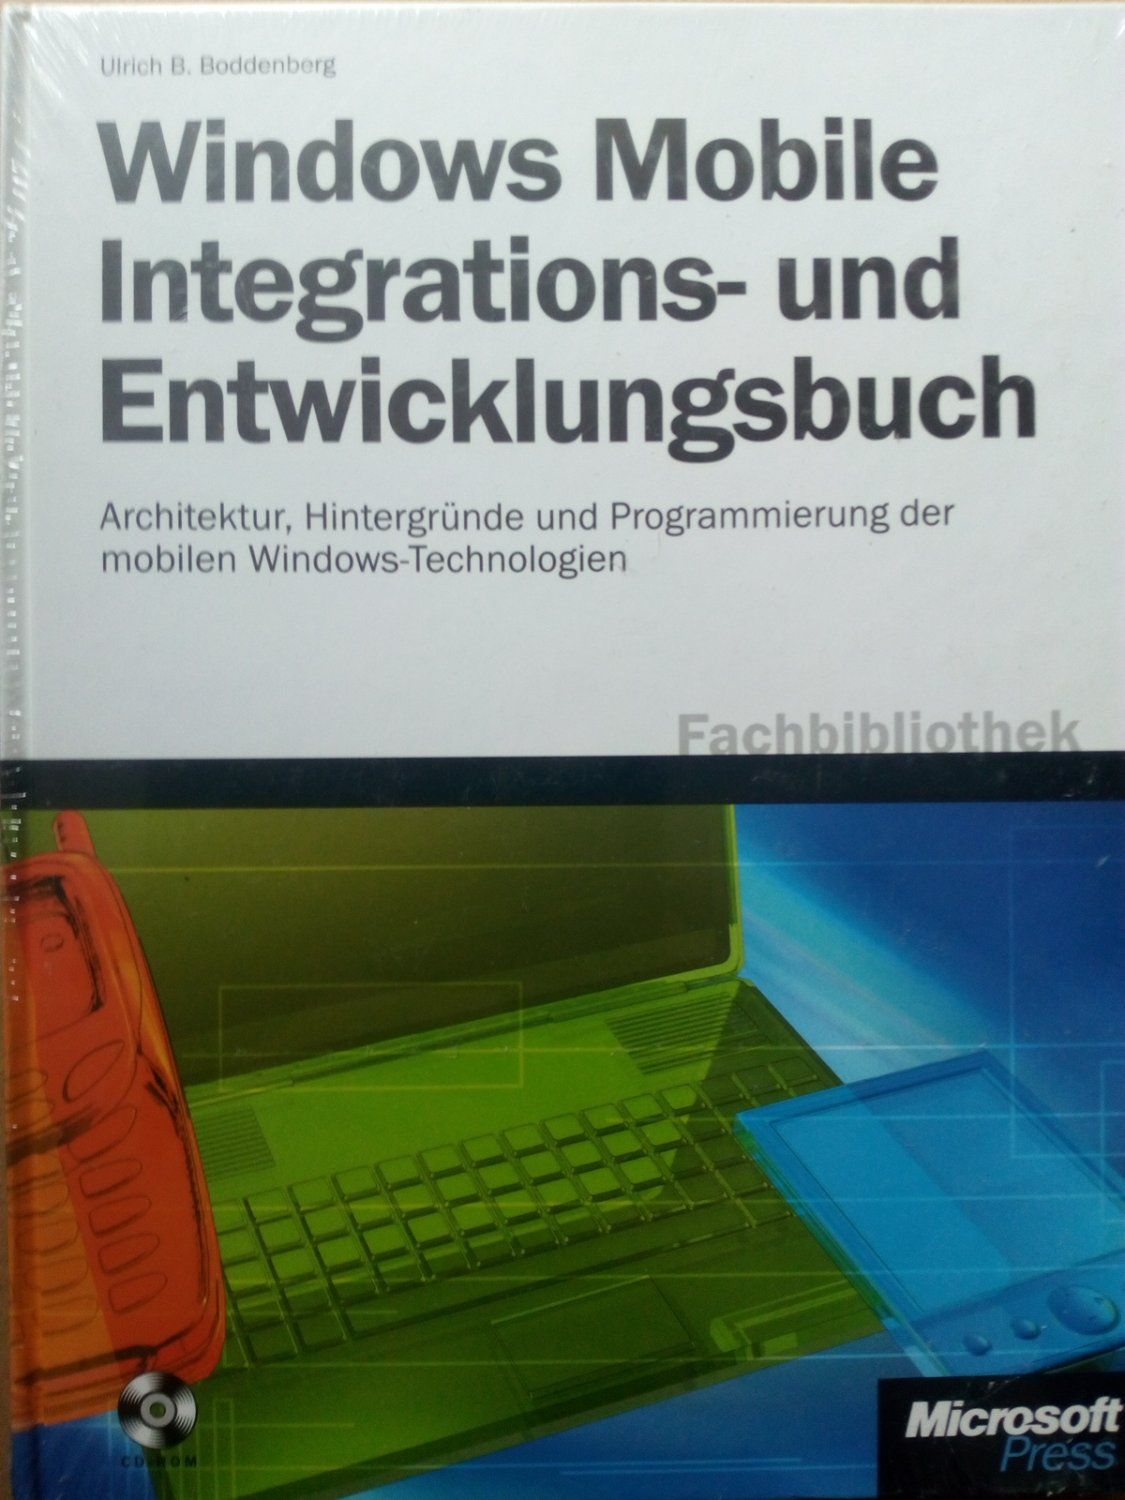 Windows Mobile Integrations- und Entwicklungsbuch. Architektur, Hintergründe und Programmierung der mobilen Windows-Technologien + 1 CD-ROM. - Ulrich B. Bodenberg